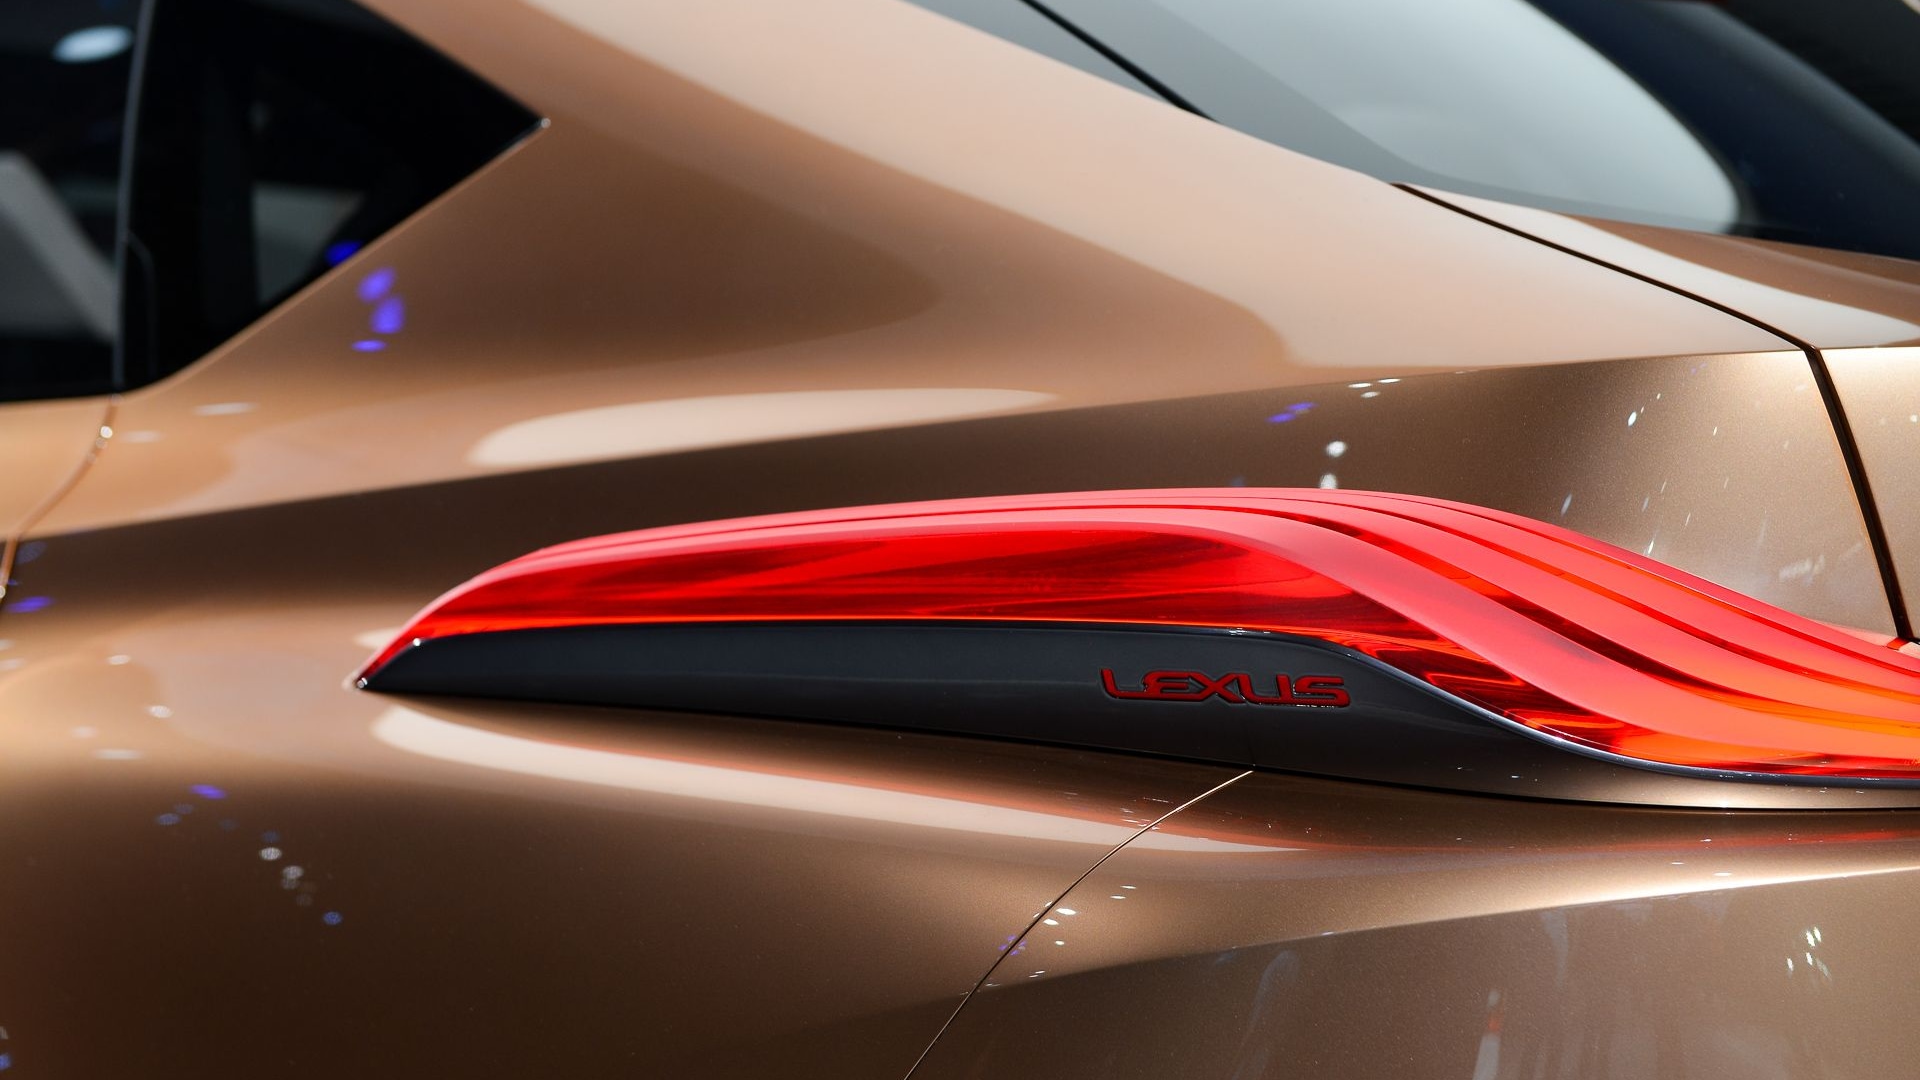 Lexus LF-1 Limitless, 2018 Detroit auto show